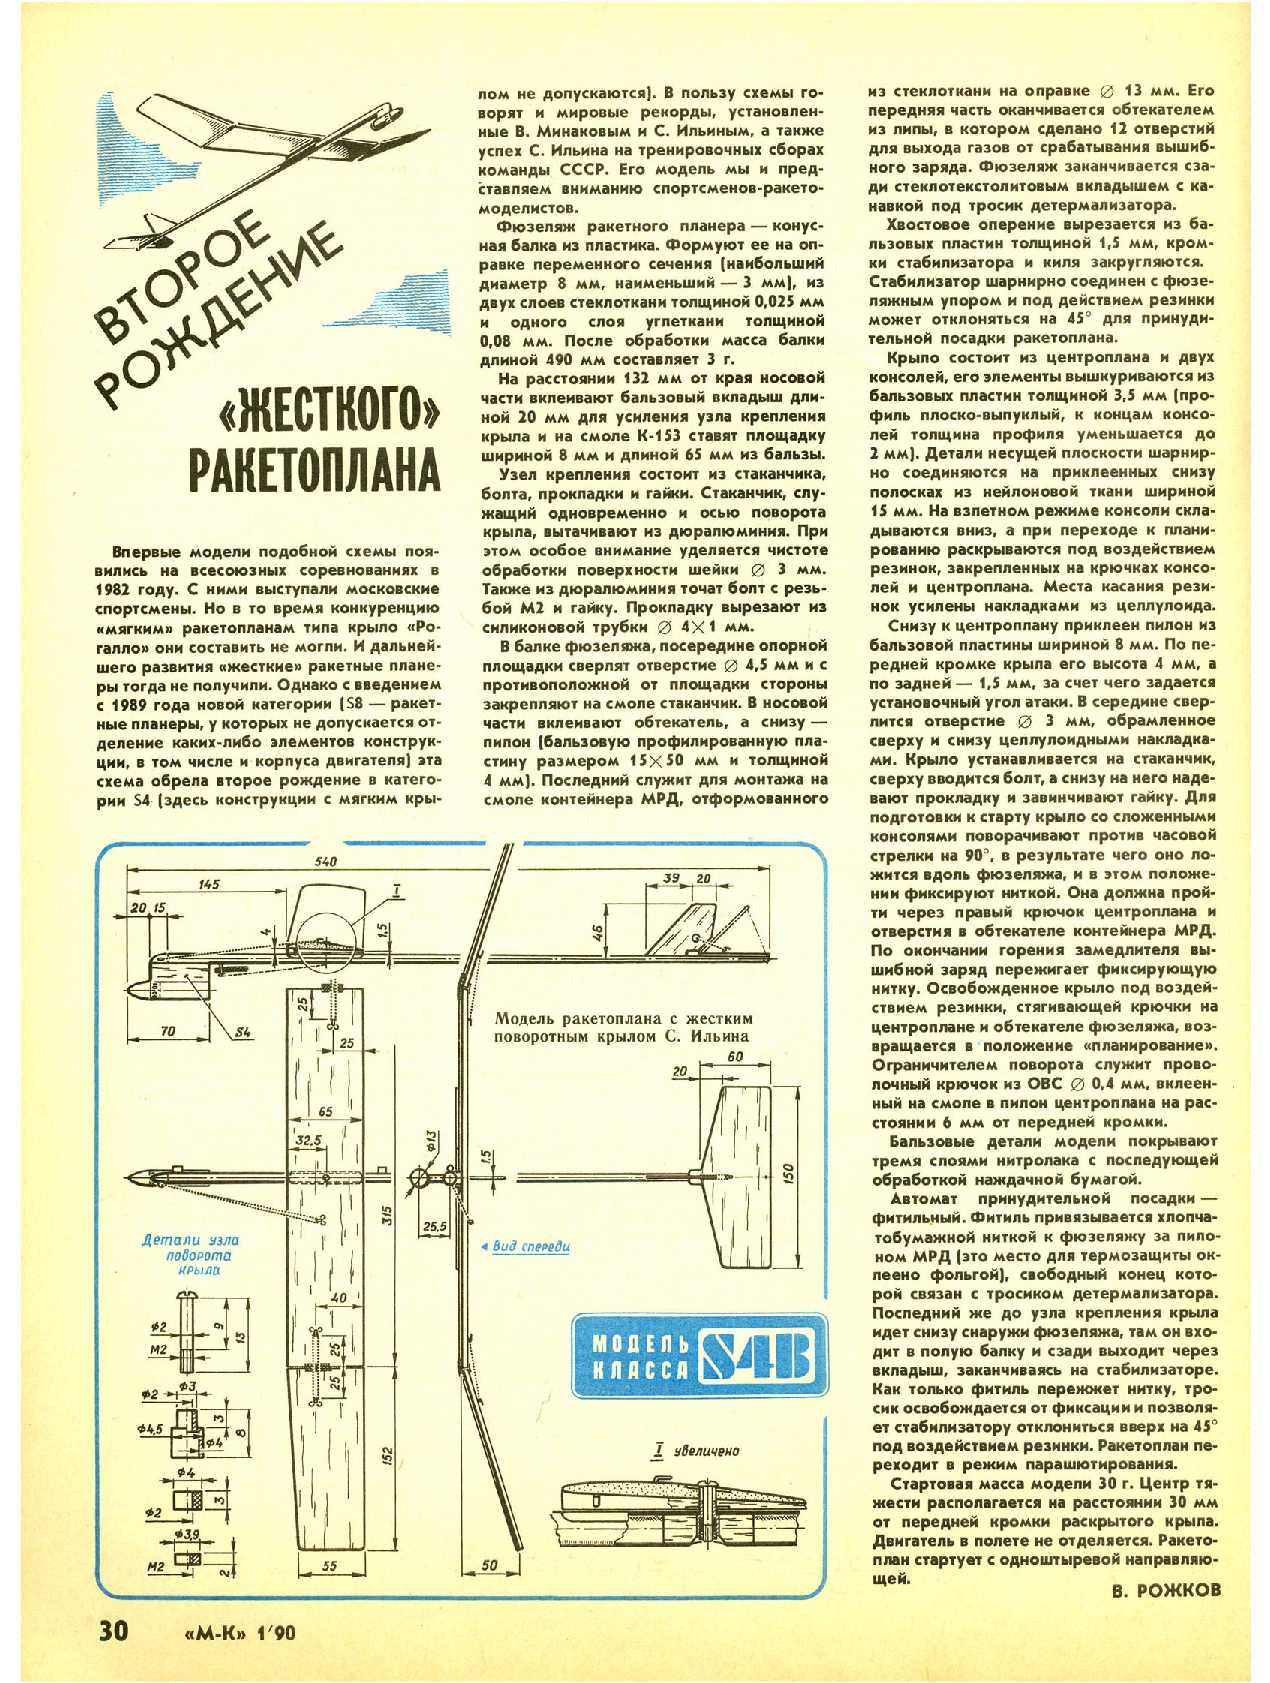 МК 1, 1990, 30 c.